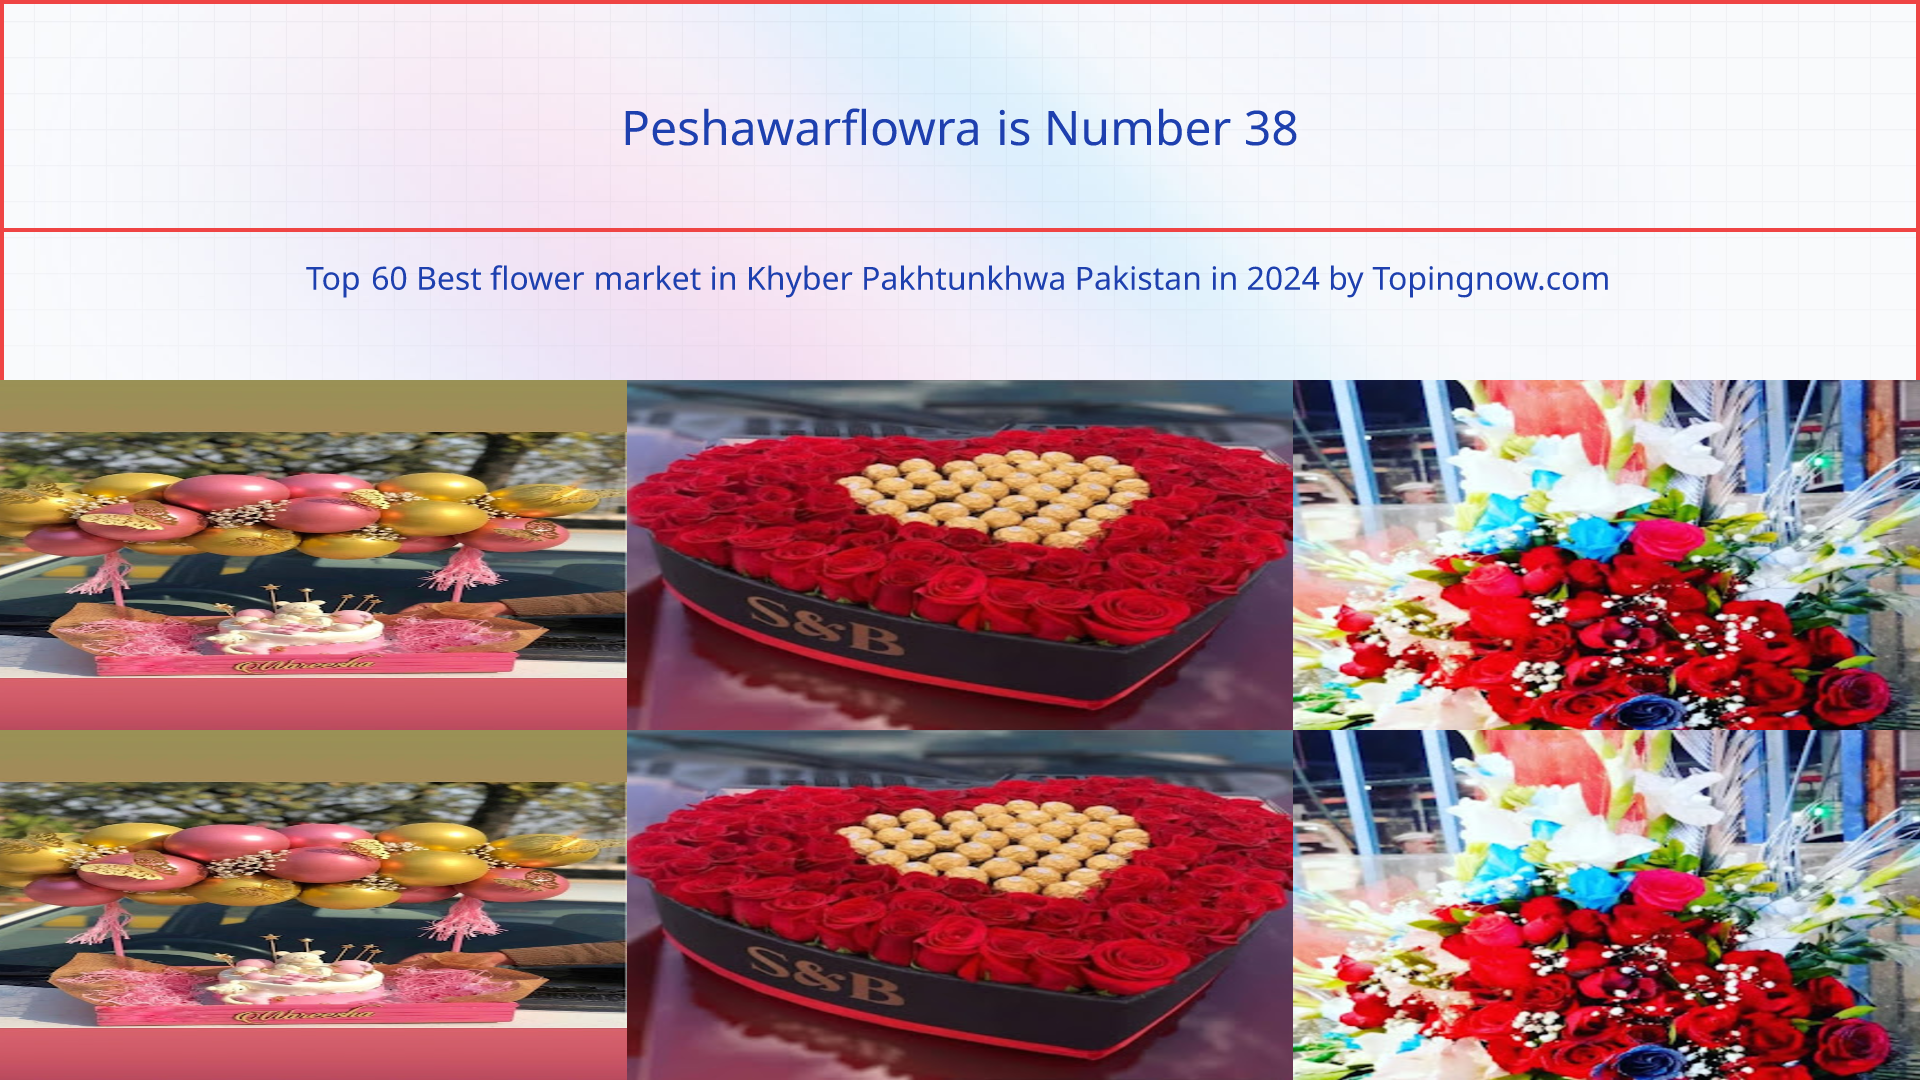 Peshawarflowra: Top 60 Best flower market in Khyber Pakhtunkhwa Pakistan in 2024